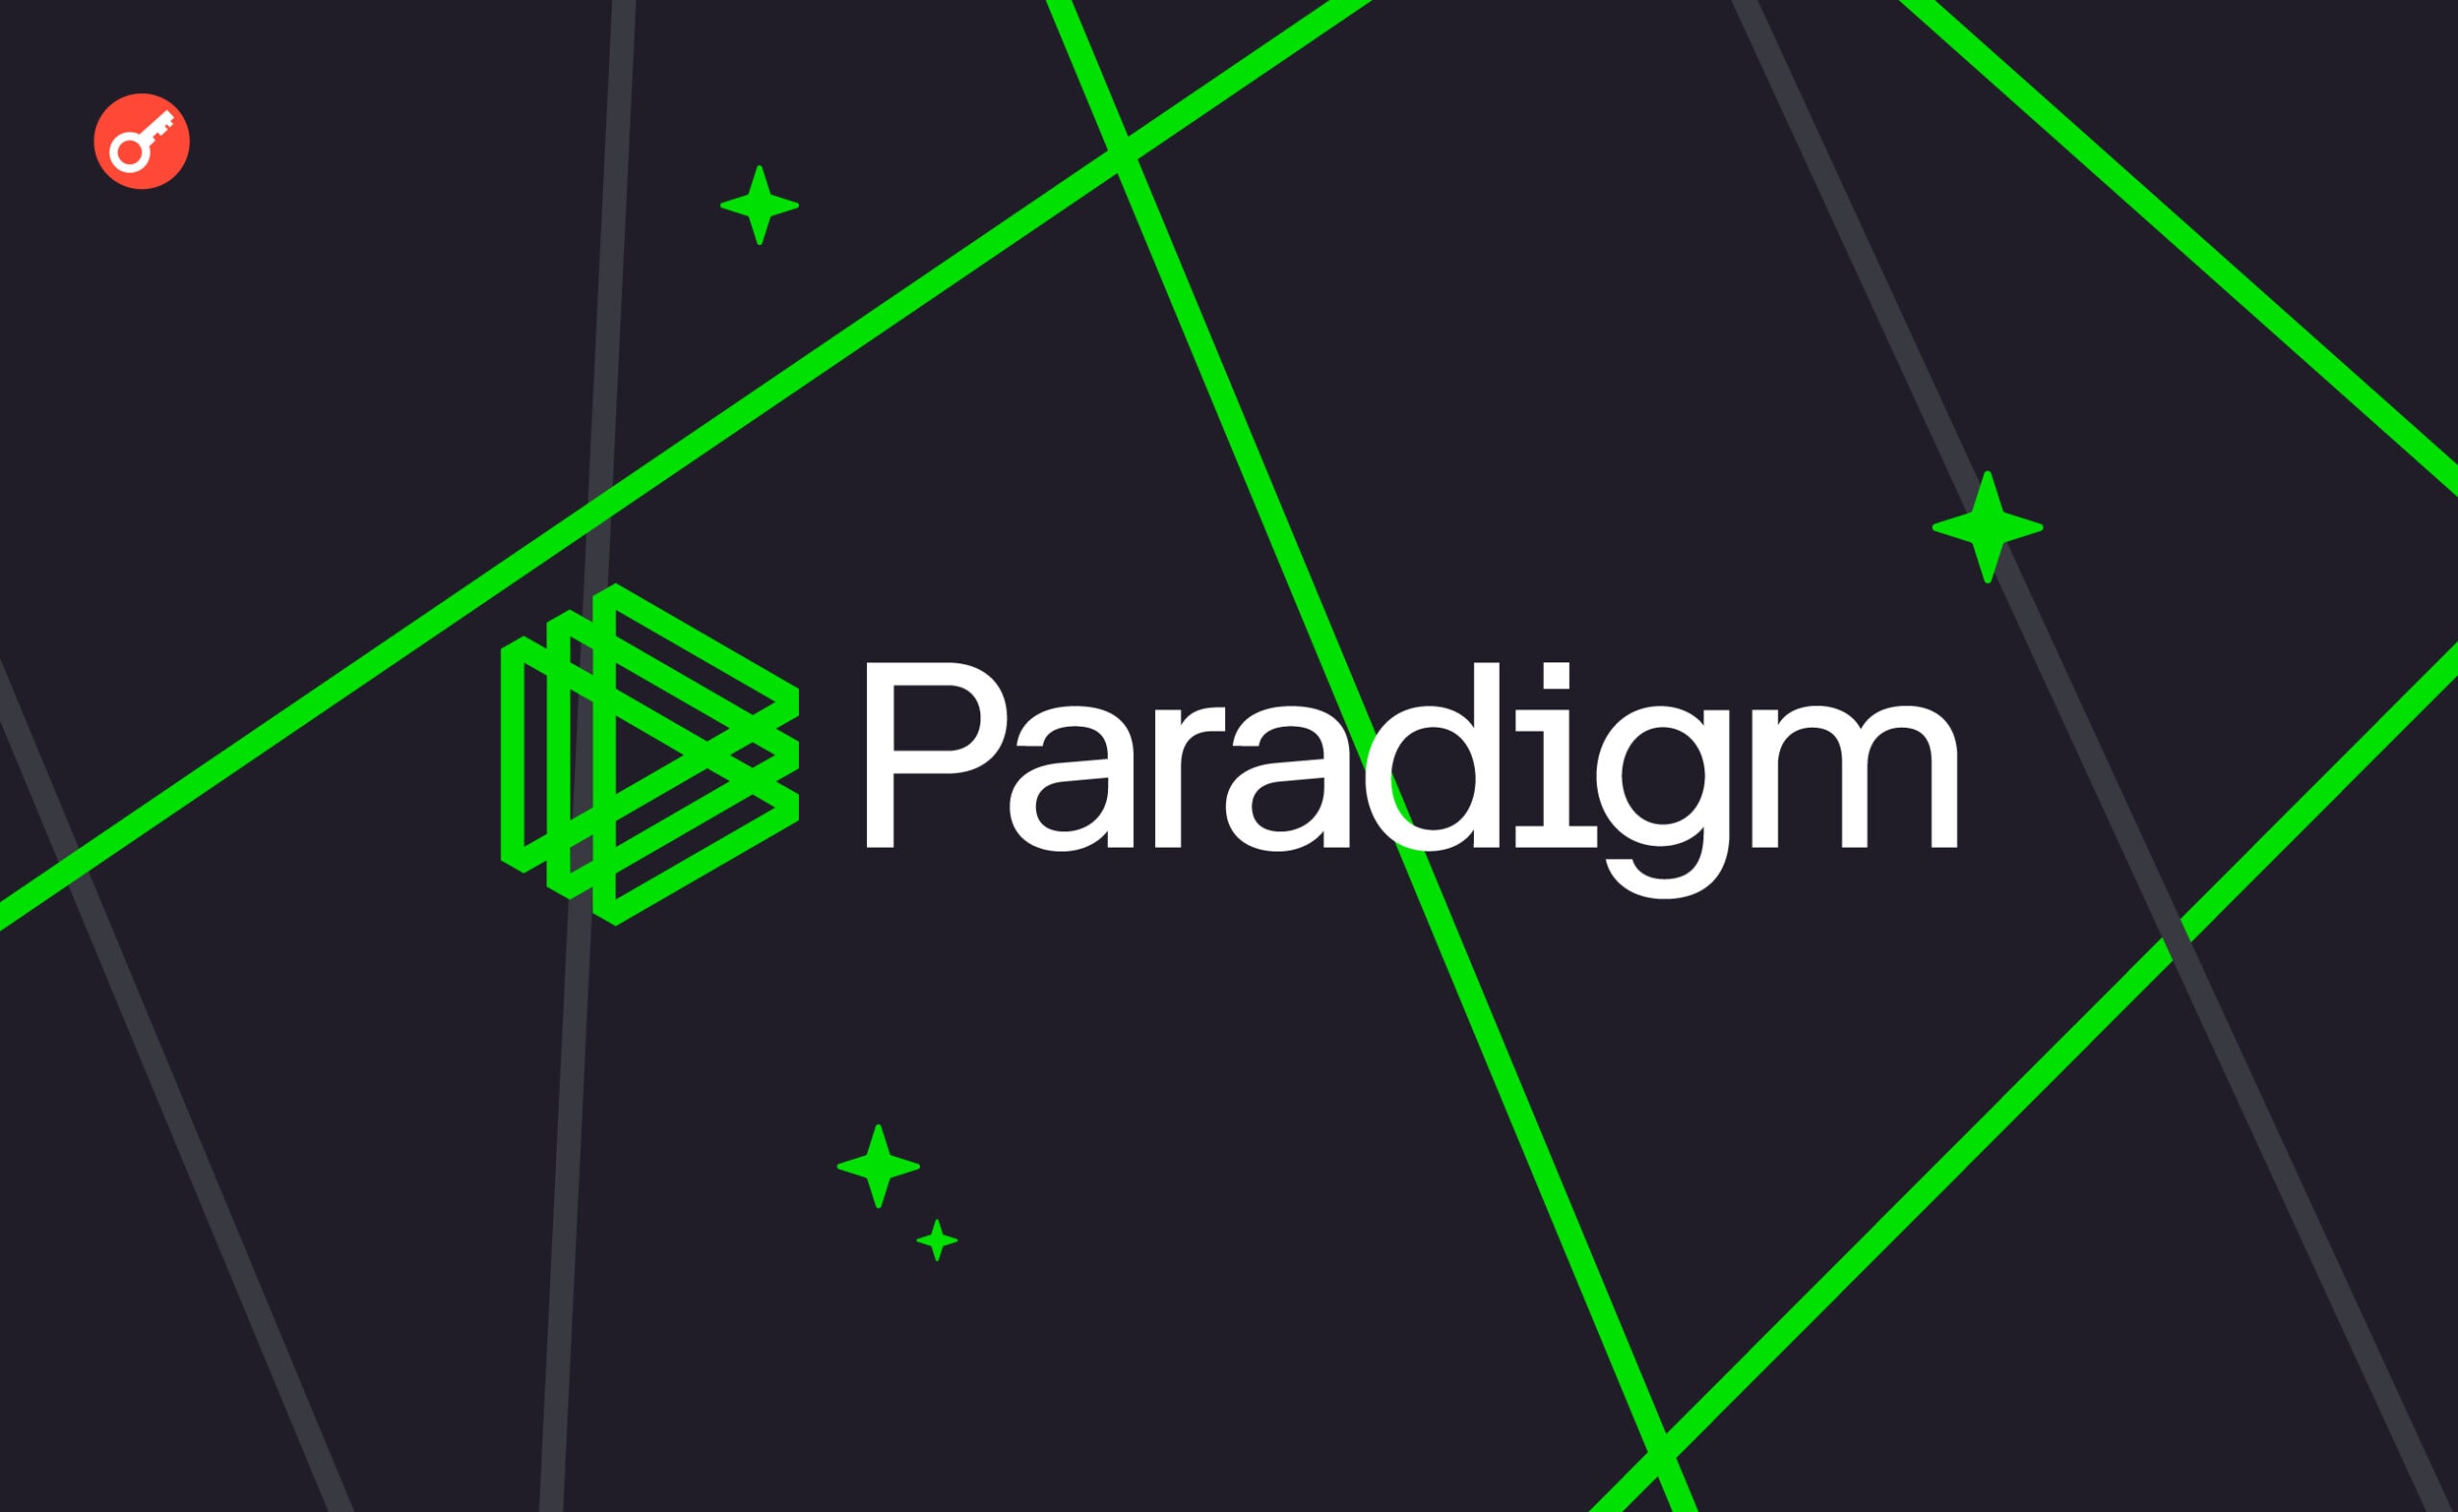 Paradigm випустили альфа-версію Reth, нового клієнта Ethereum на базі Rust. Головний колаж новини.